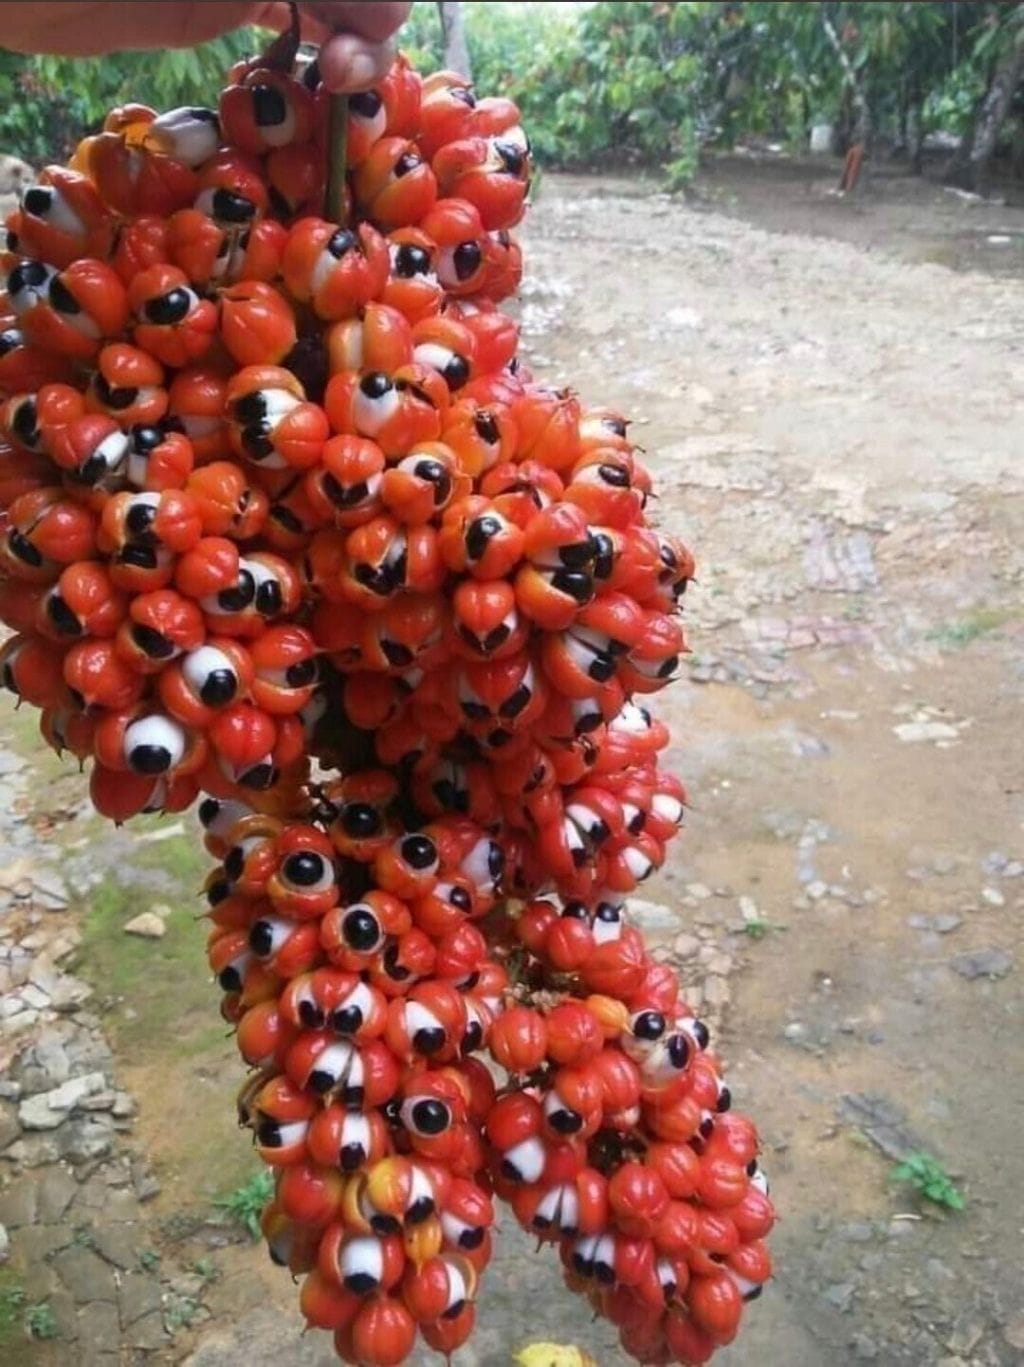  눈알괴물처럼 생긴 과라나 열매